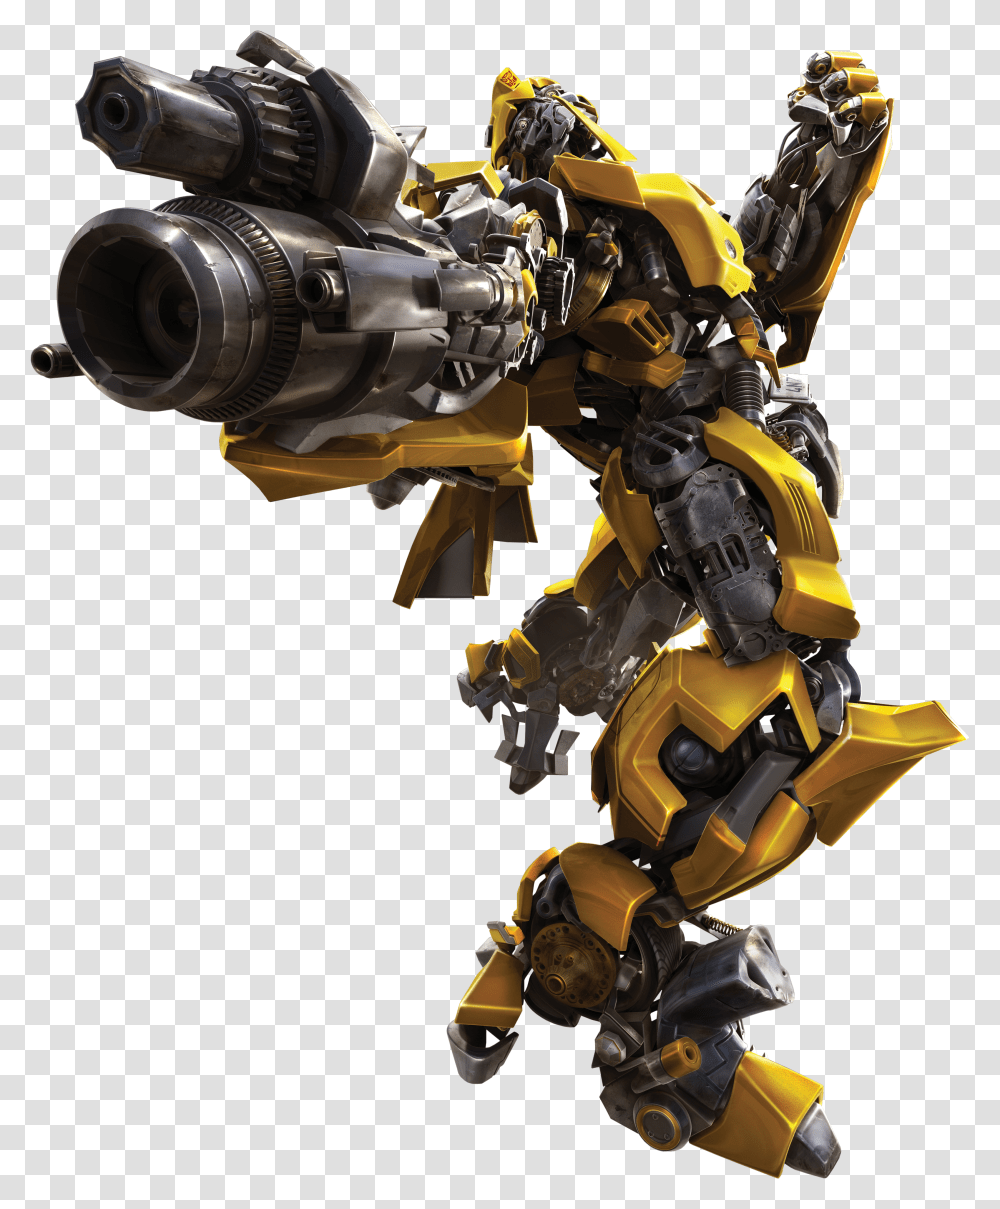 Bumblebee Transformers 1 Bumblebee Gun Transparent Png